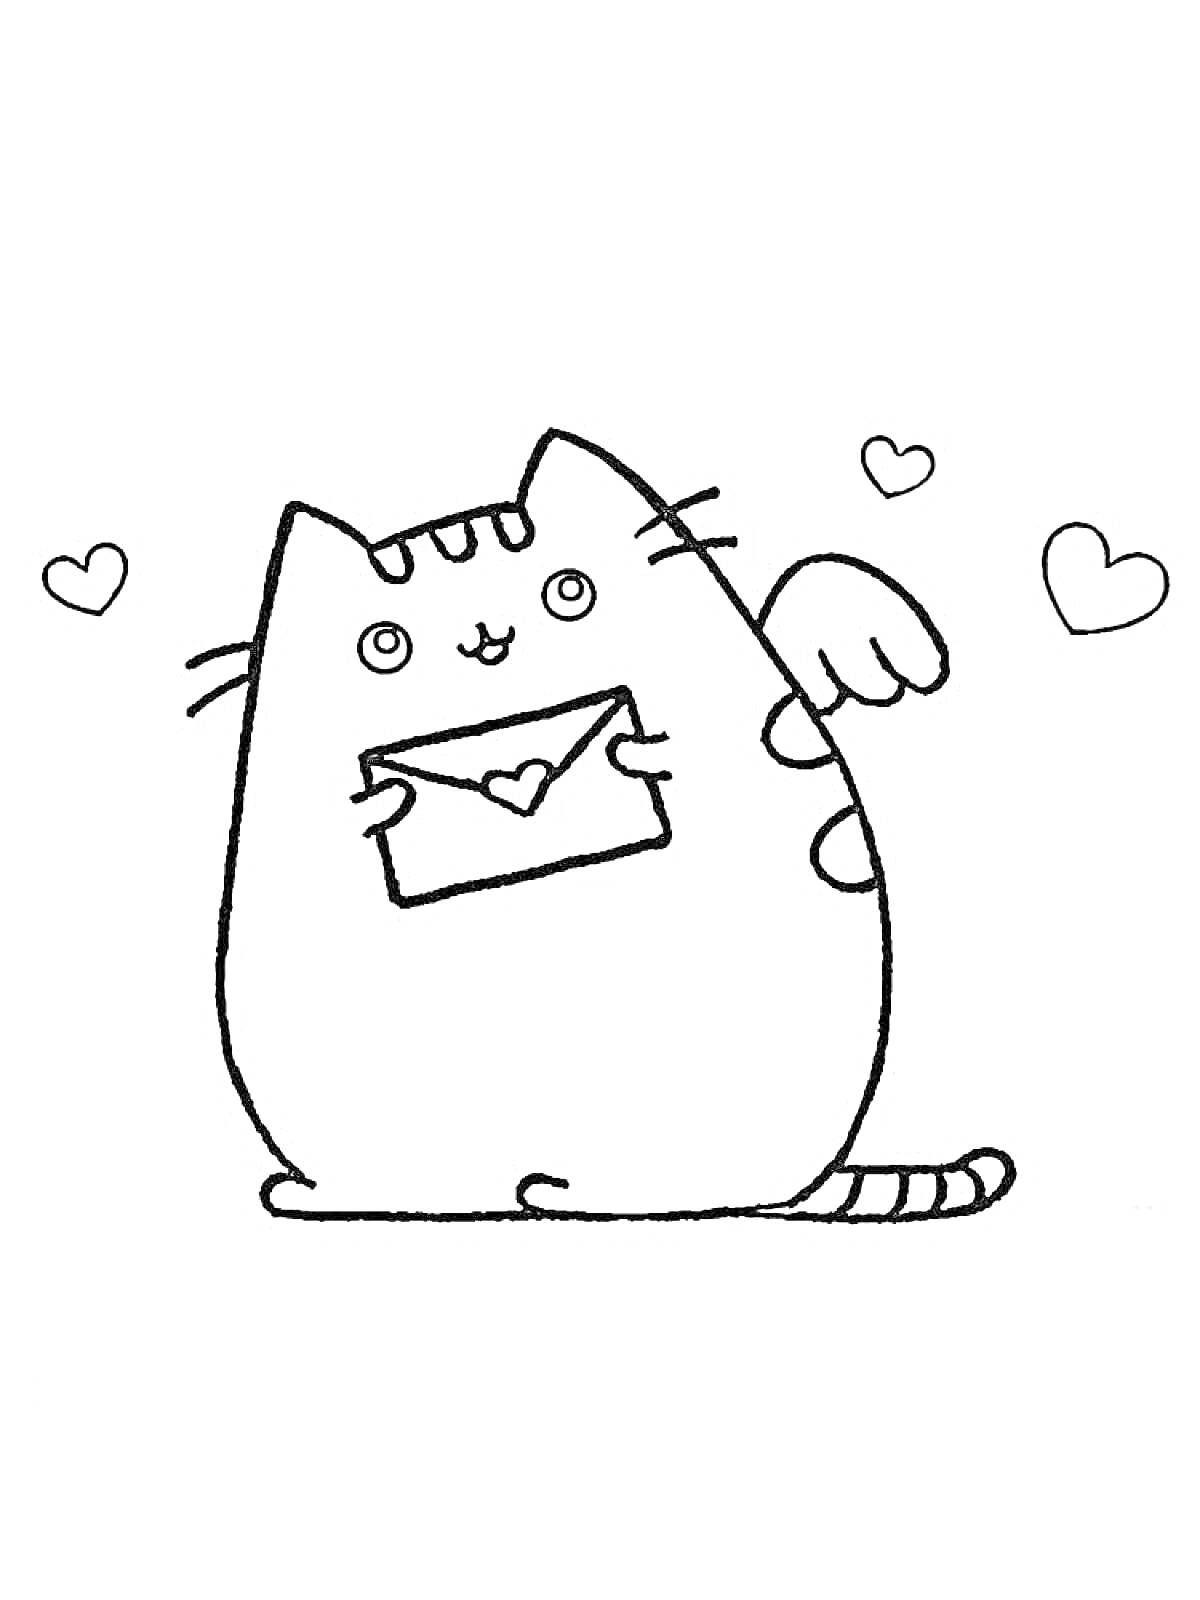 Раскраска Кот Пушин с крыльями, держащий конверт с сердечком, с летающими сердечками вокруг